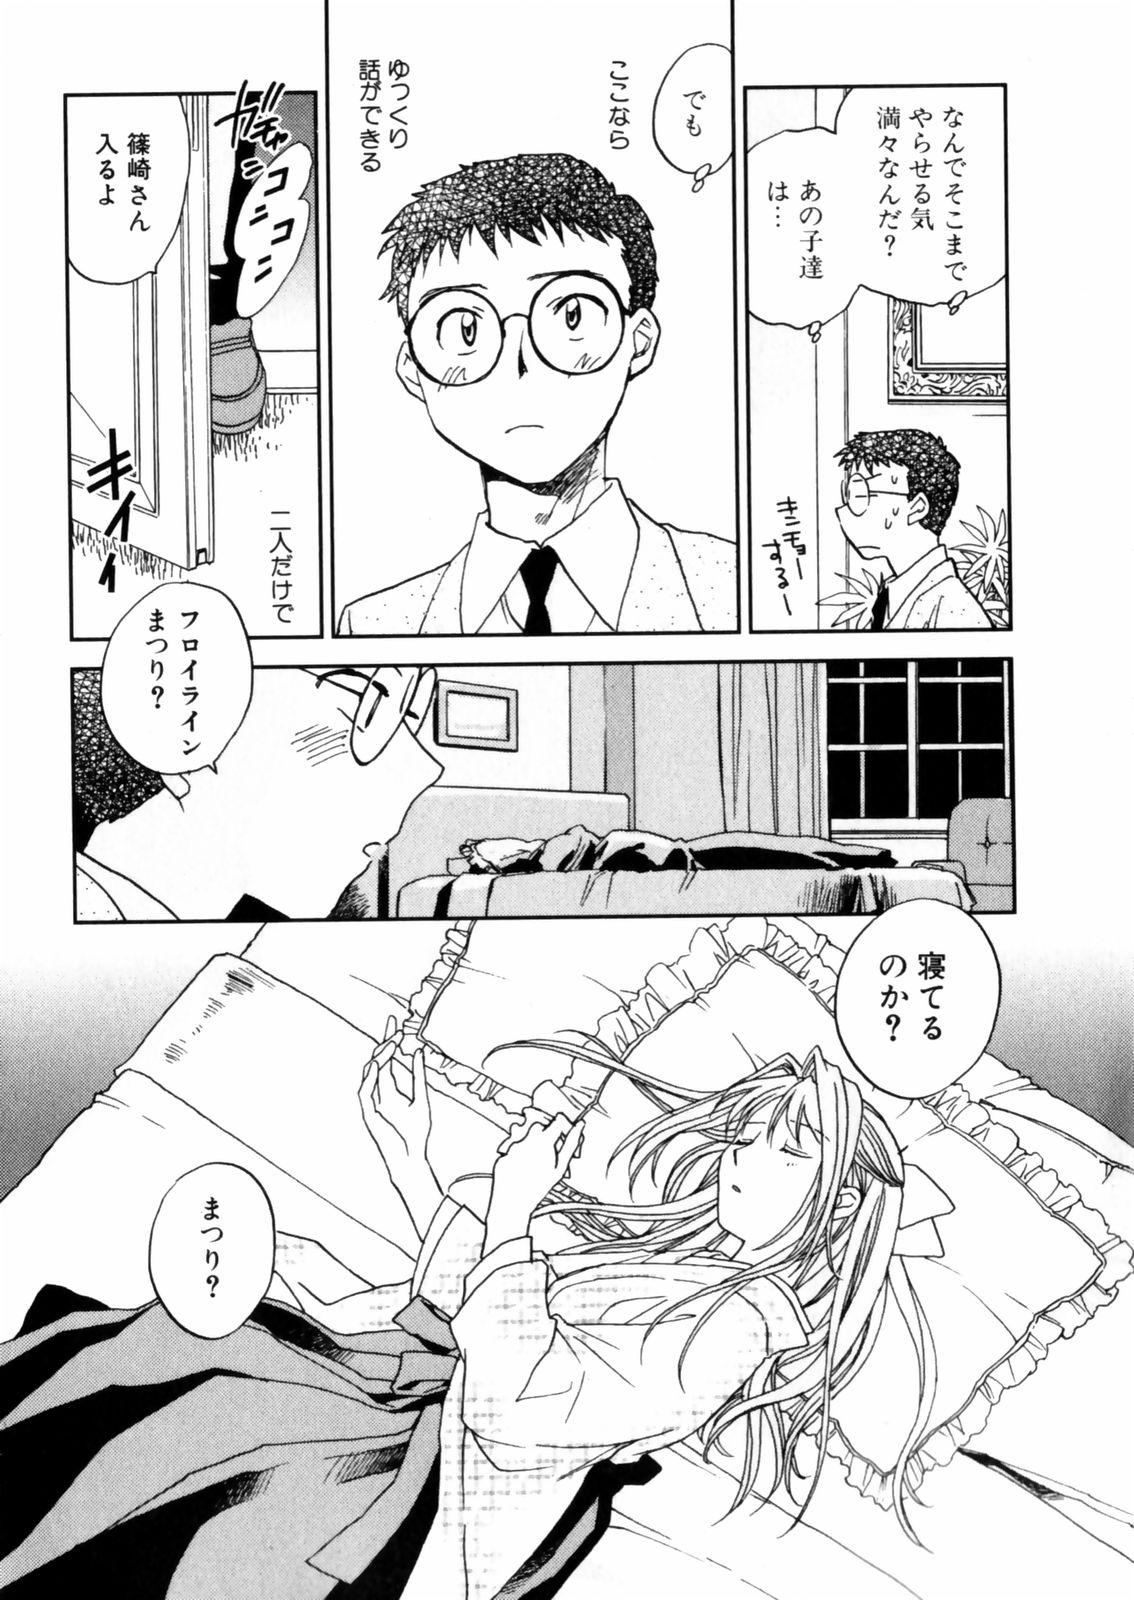 [Okano Ahiru] Hanasake ! Otome Juku (Otome Private Tutoring School) Vol.2 89